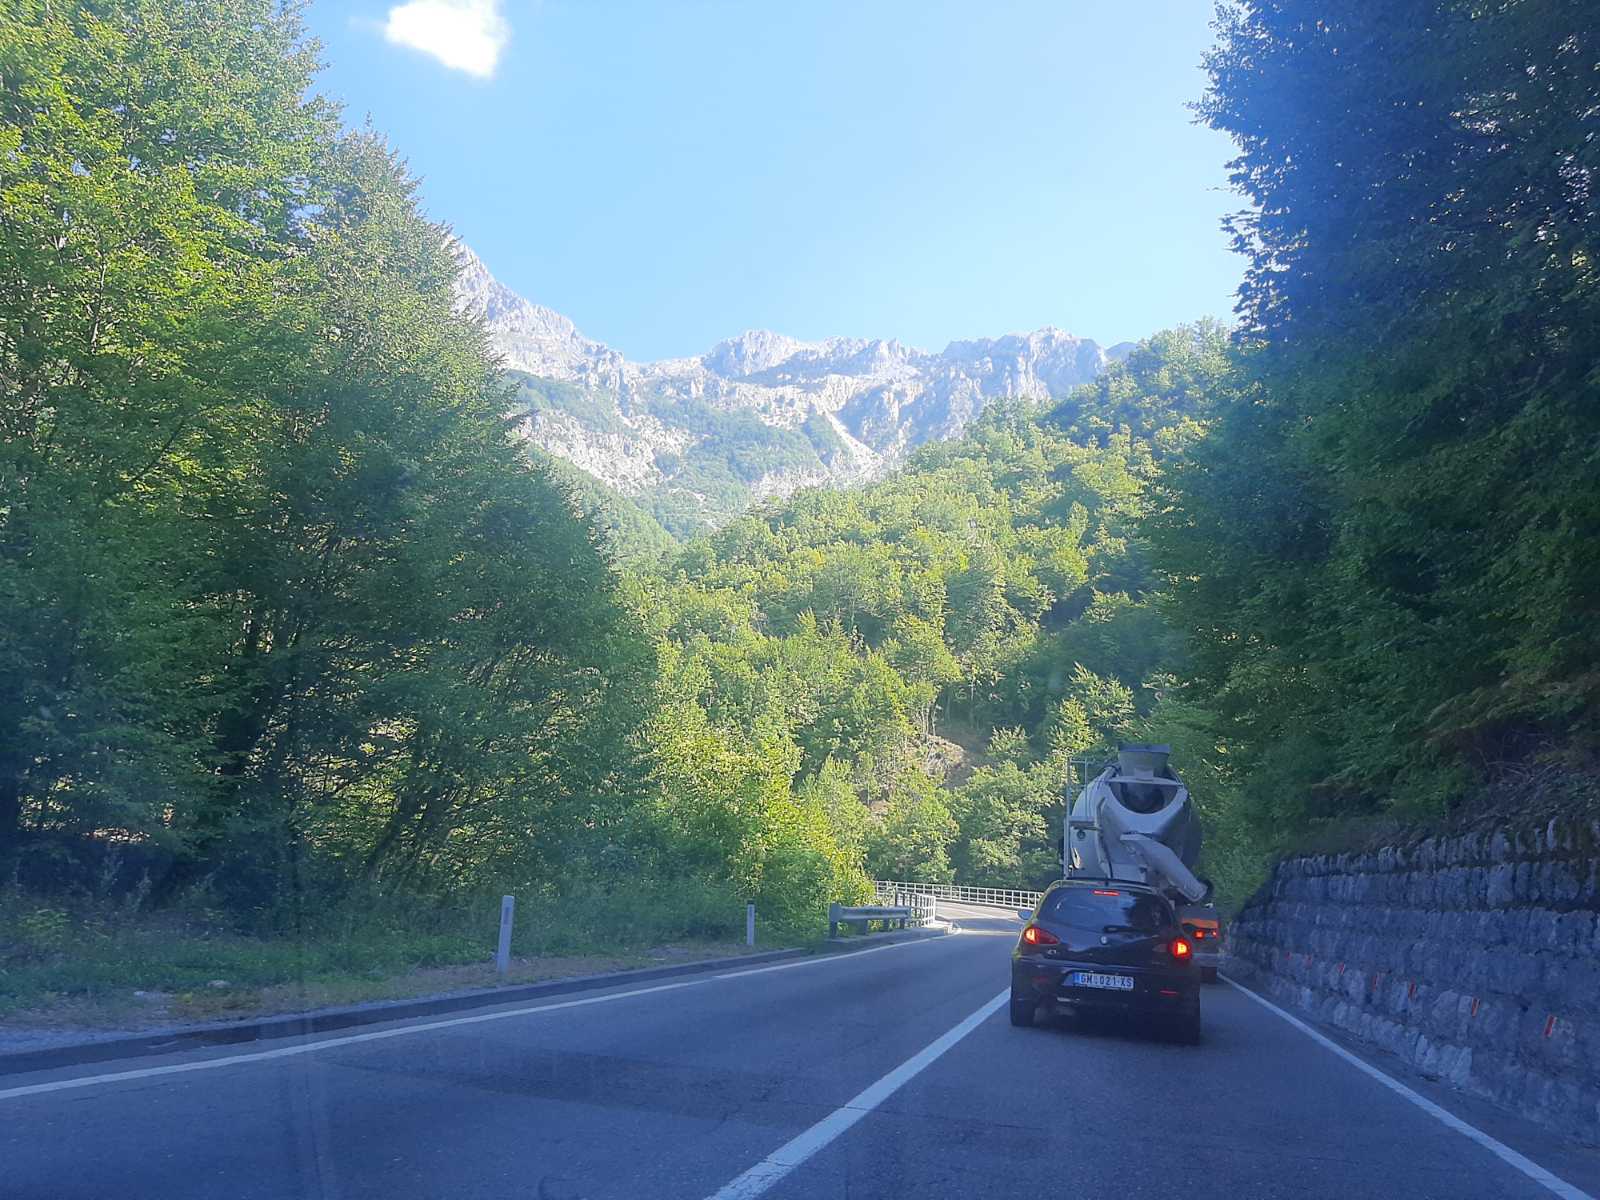 STANJE NA PUTEVIMA: U Crnoj Gori jutros se saobraća po suvom kolovozu, a vidljivost je dobra